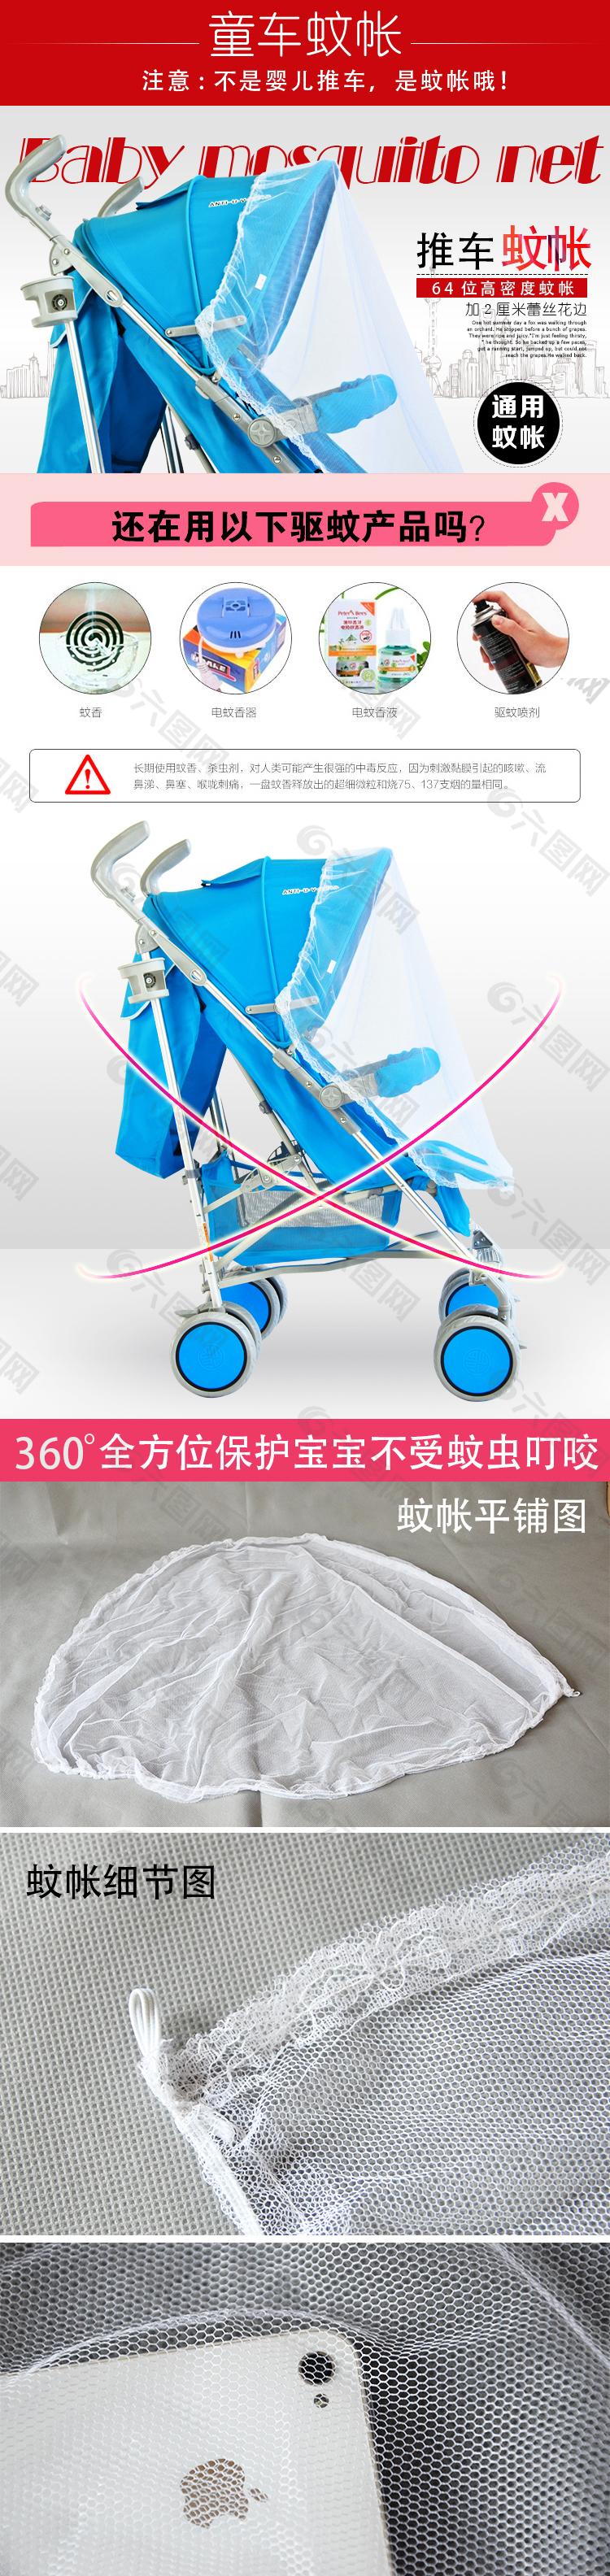 婴儿推车通用蚊帐详情页设计